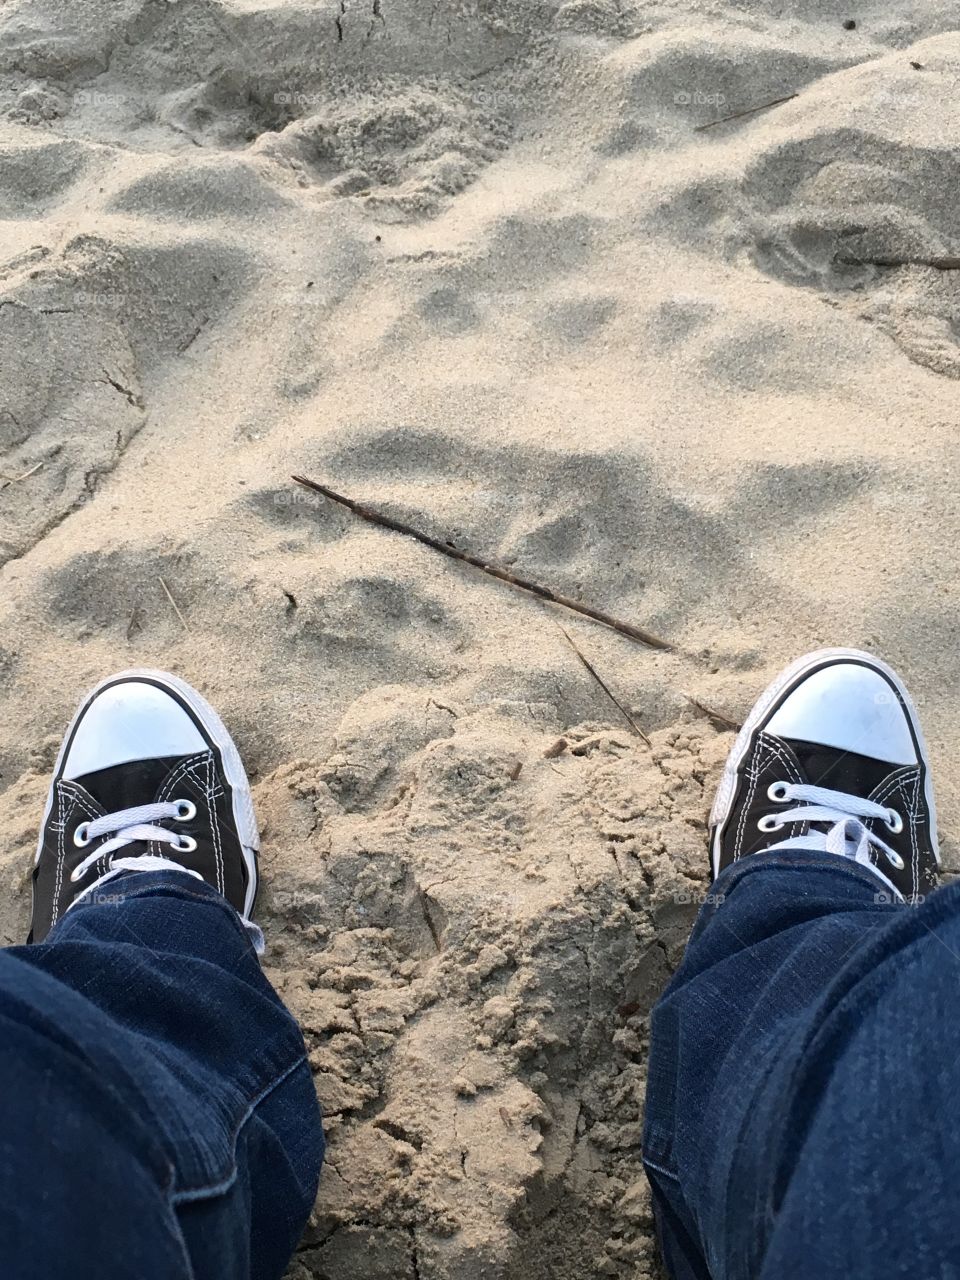 A walk on the beach 